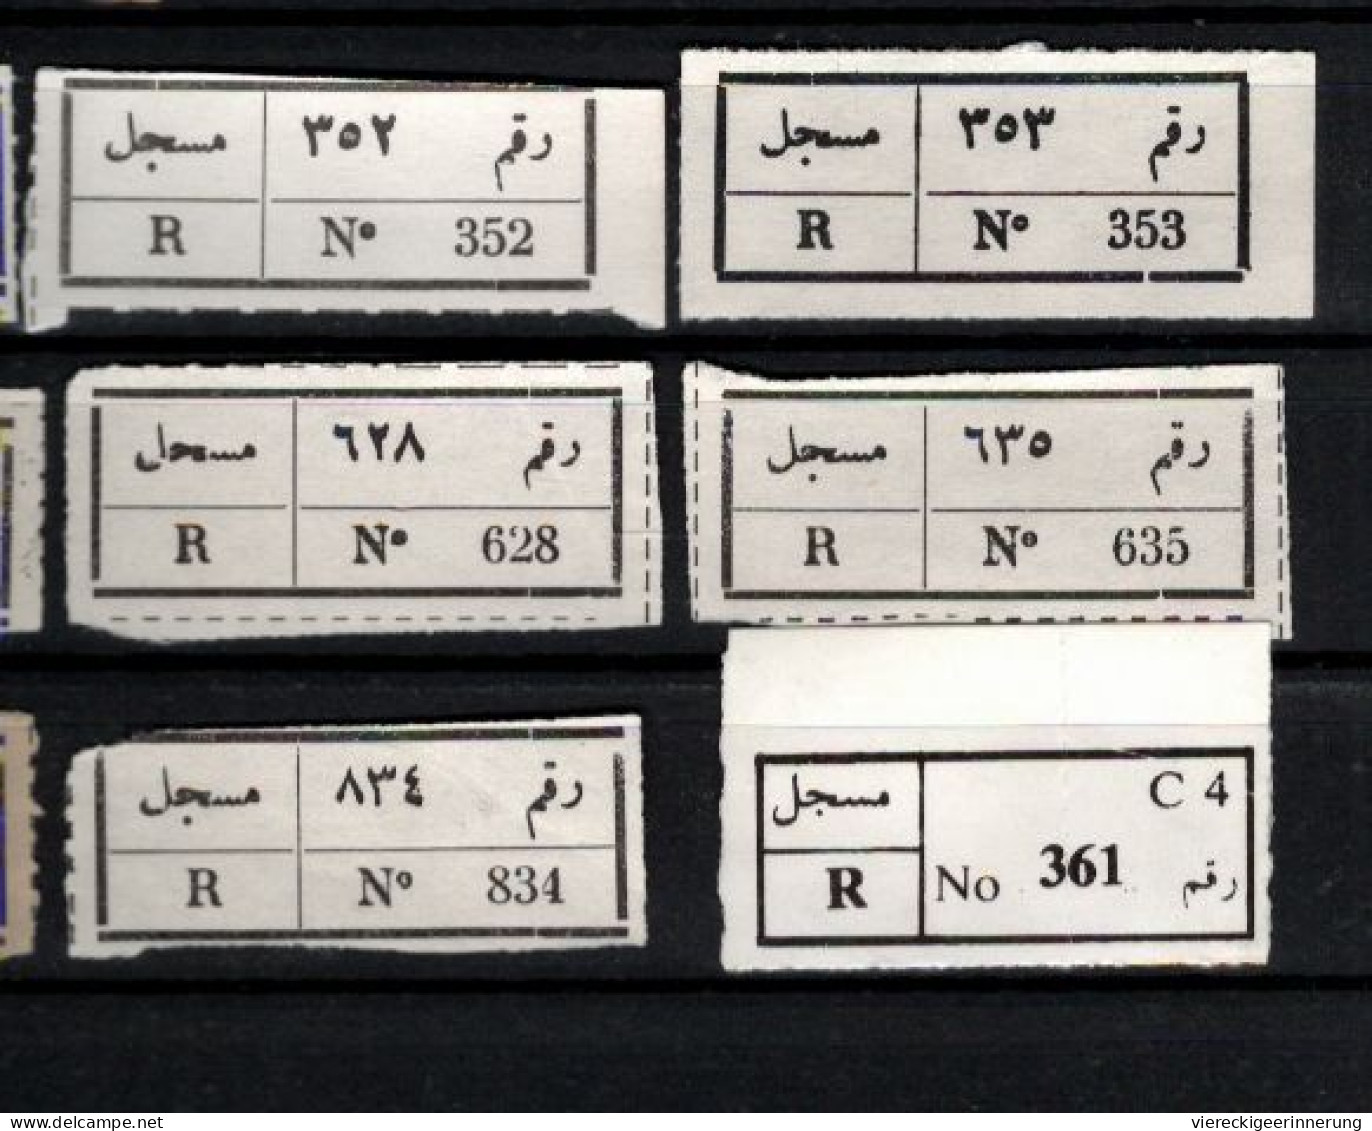 ! 1 Steckkarte Mit 14 R-Zetteln Aus Jemen, Yemen ?, Asmara, Sanaa, Einschreibzettel, Reco Label - Yemen